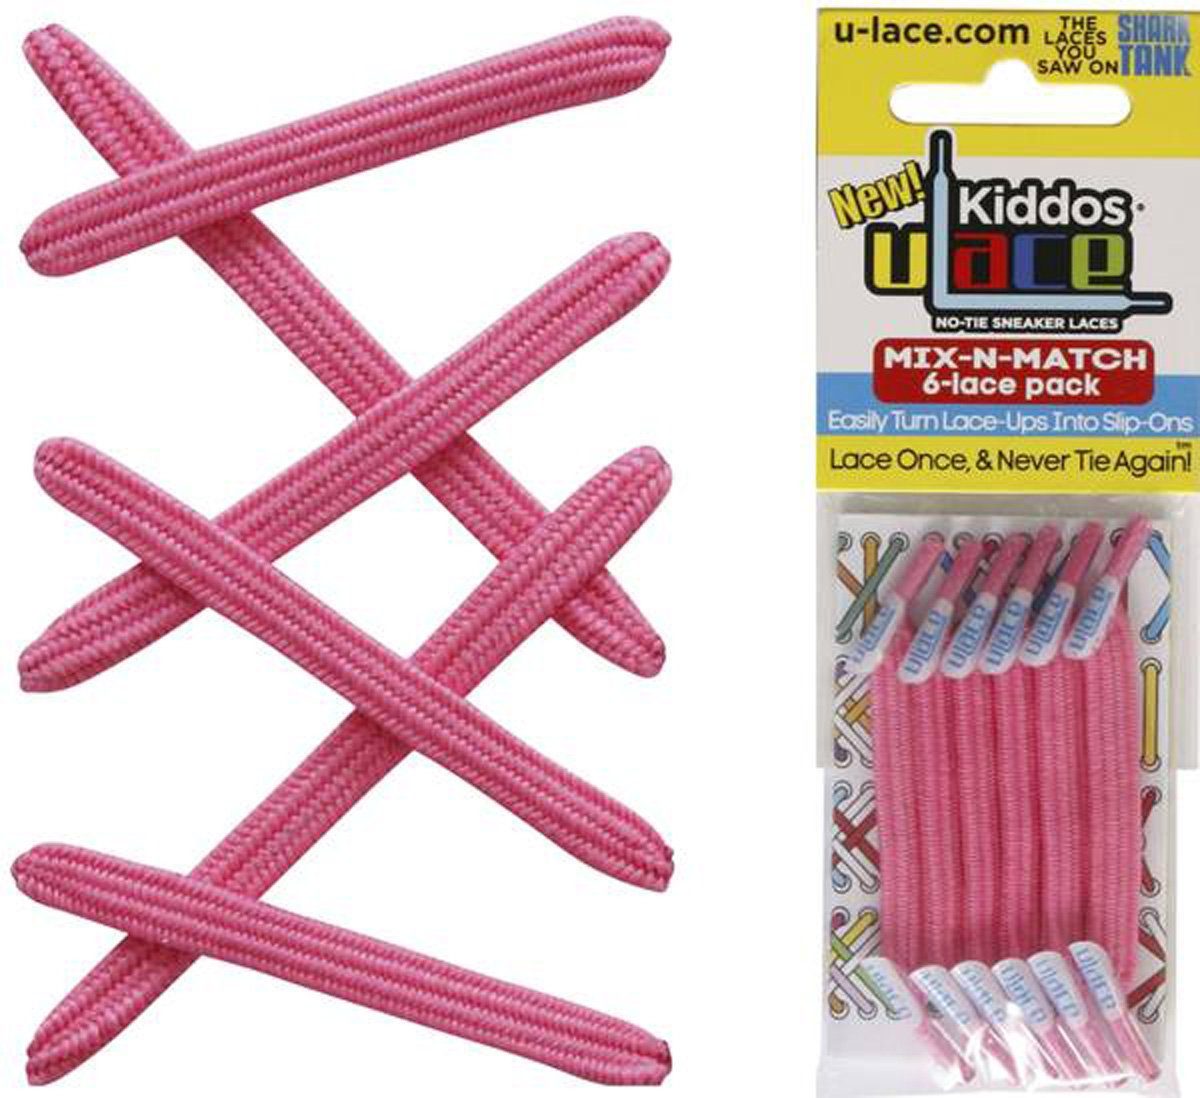 Pink Shocking mit Kiddos elastische U-Laces Schnürsenkel Wiederhaken für Kinder Schnürsenkel -